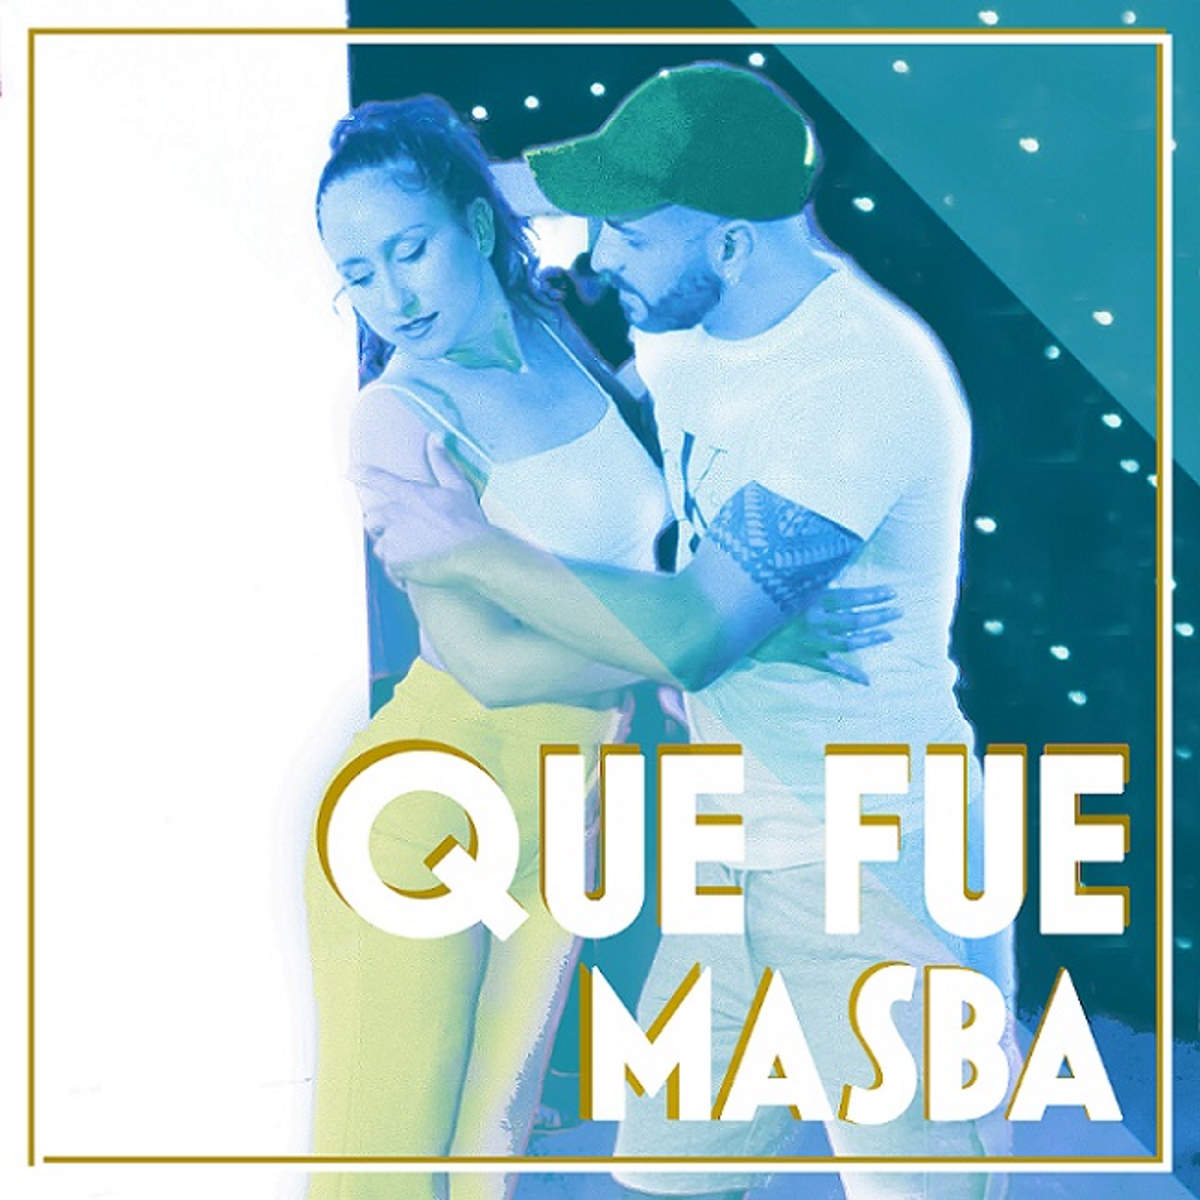 Milazzo (ME) – All’insegna dell’allegria “Que fue”, il nuovo singolo di Masba